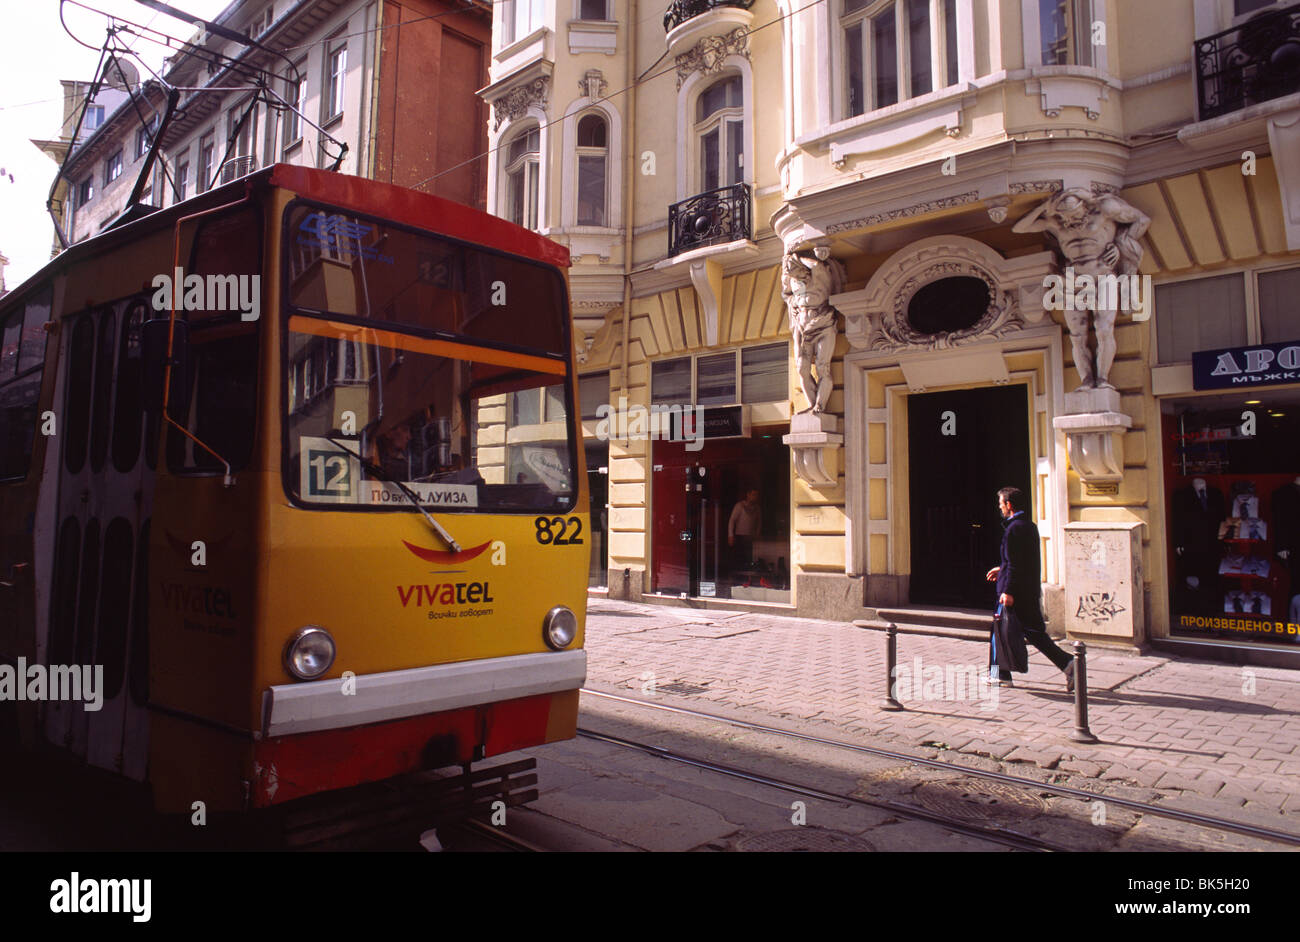 Le tram passe un vieux bâtiment avec une façade richement décorée sous la forme d'historisme. Banque D'Images